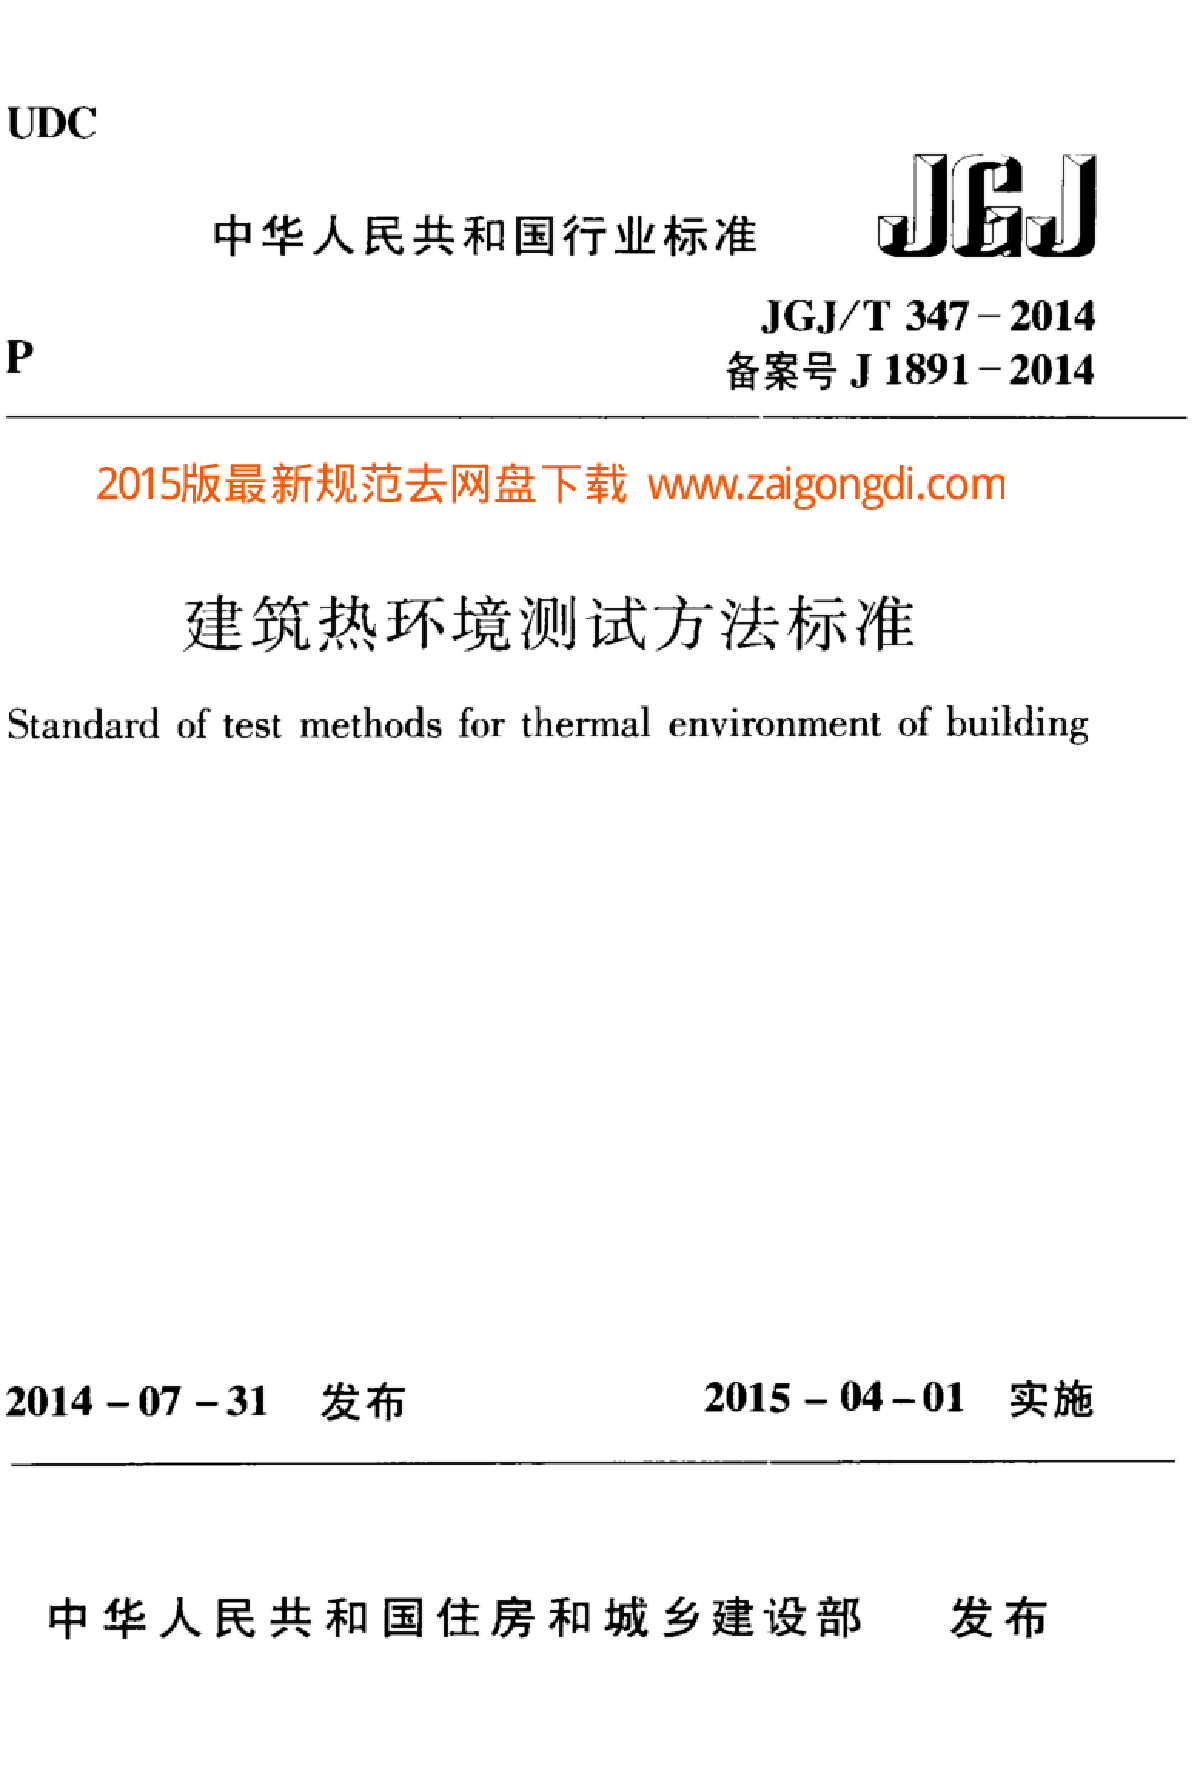 JGJT 347-2014 建筑热环境测试方法标准-图一